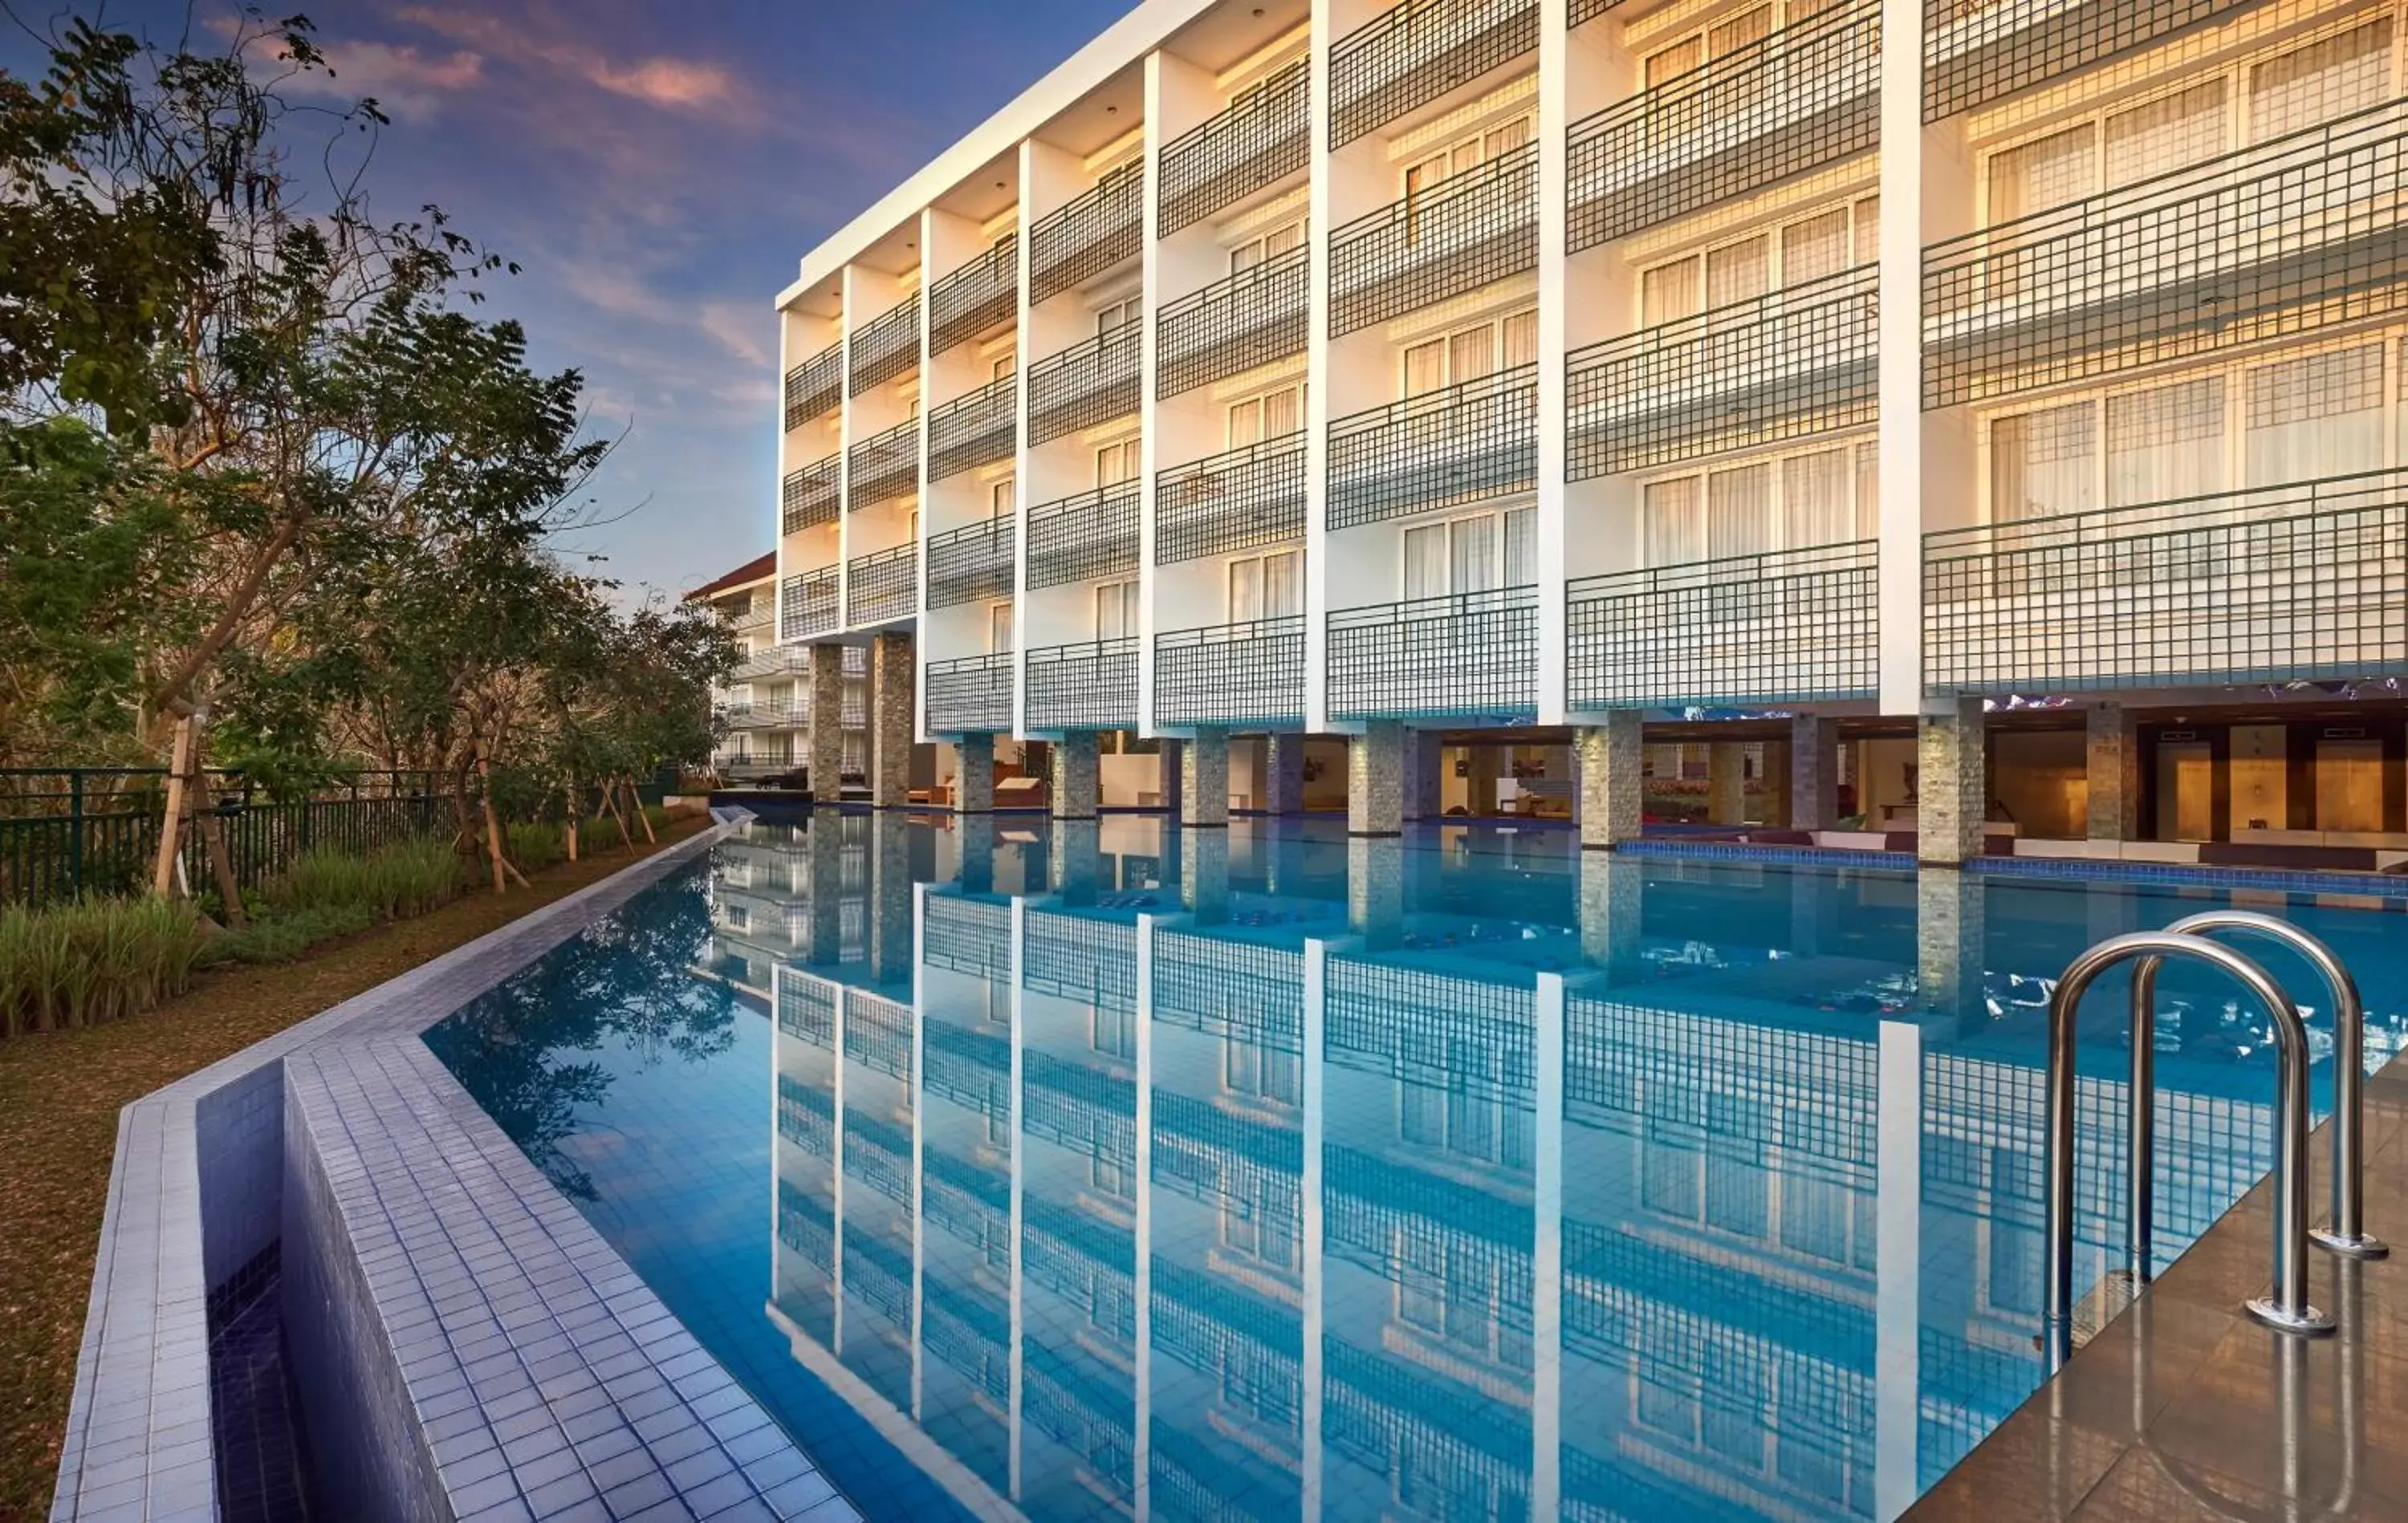 Property building, Swimming Pool in The Sintesa Jimbaran Bali